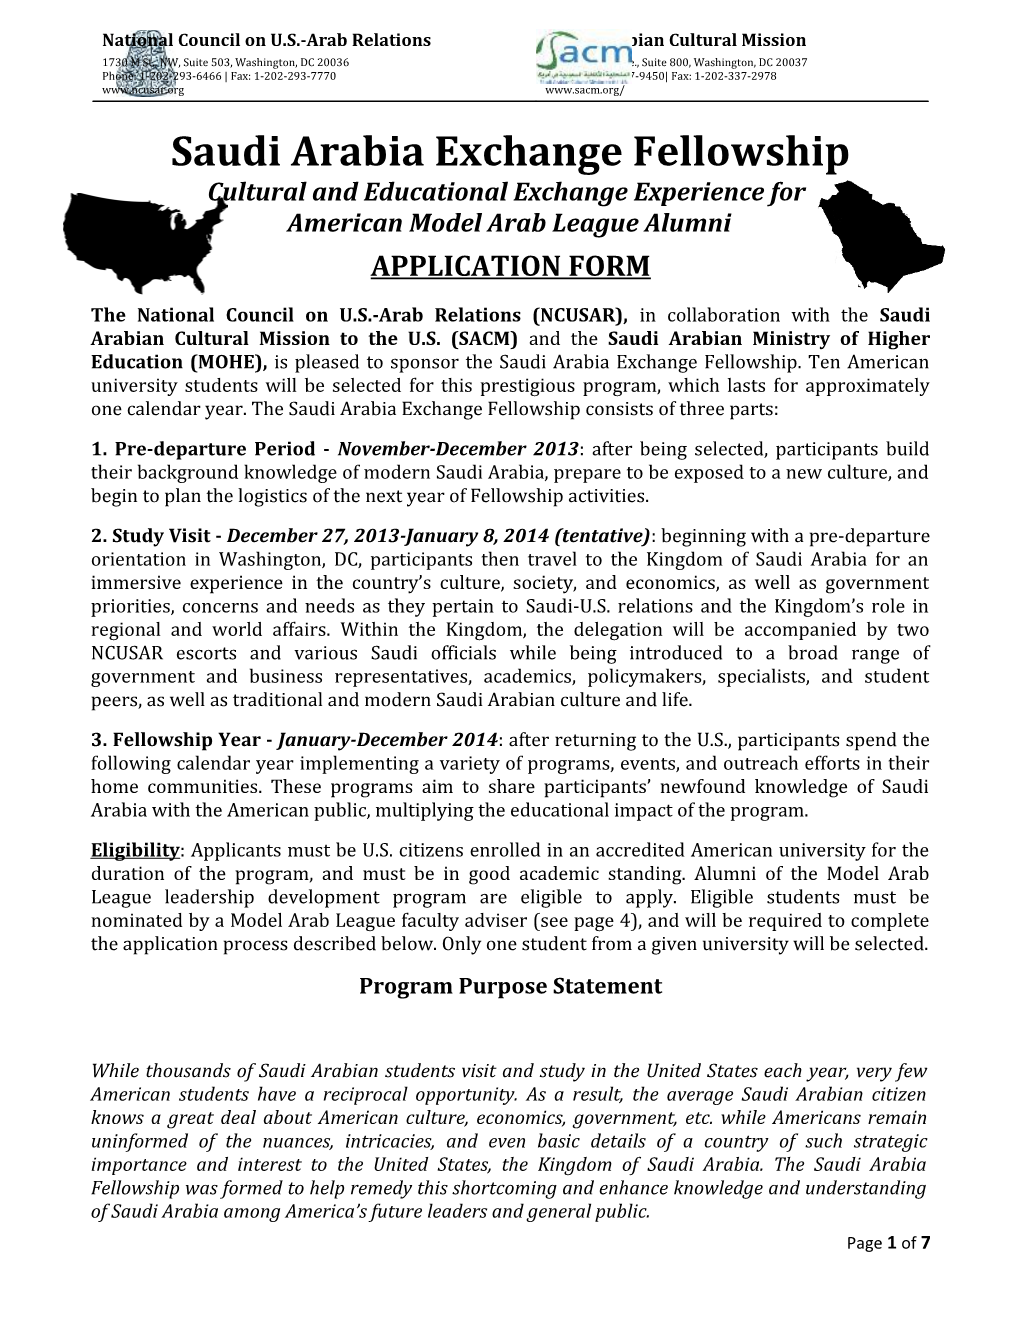 Saudi Arabia Exchange Fellowship Application